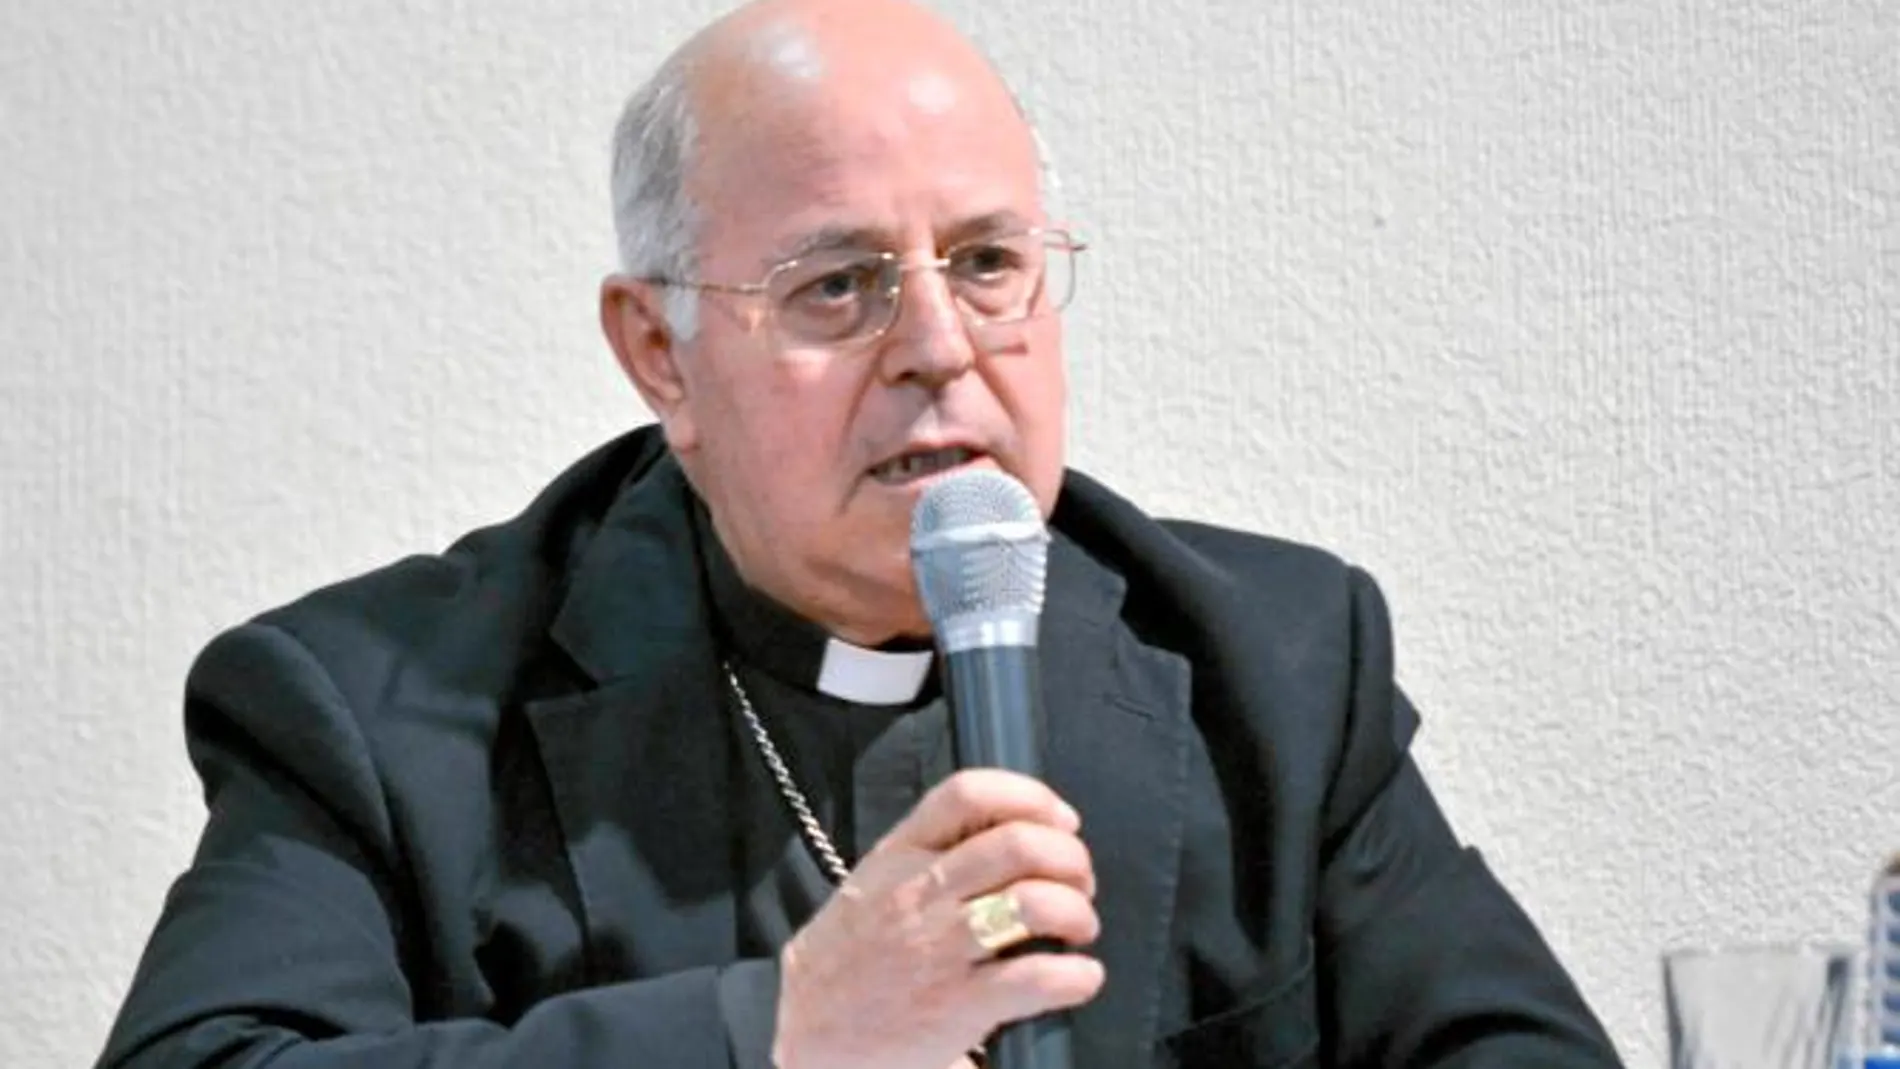 El arzobispo de Valladolid, Ricardo Blázquez, presenta la campaña del Domund